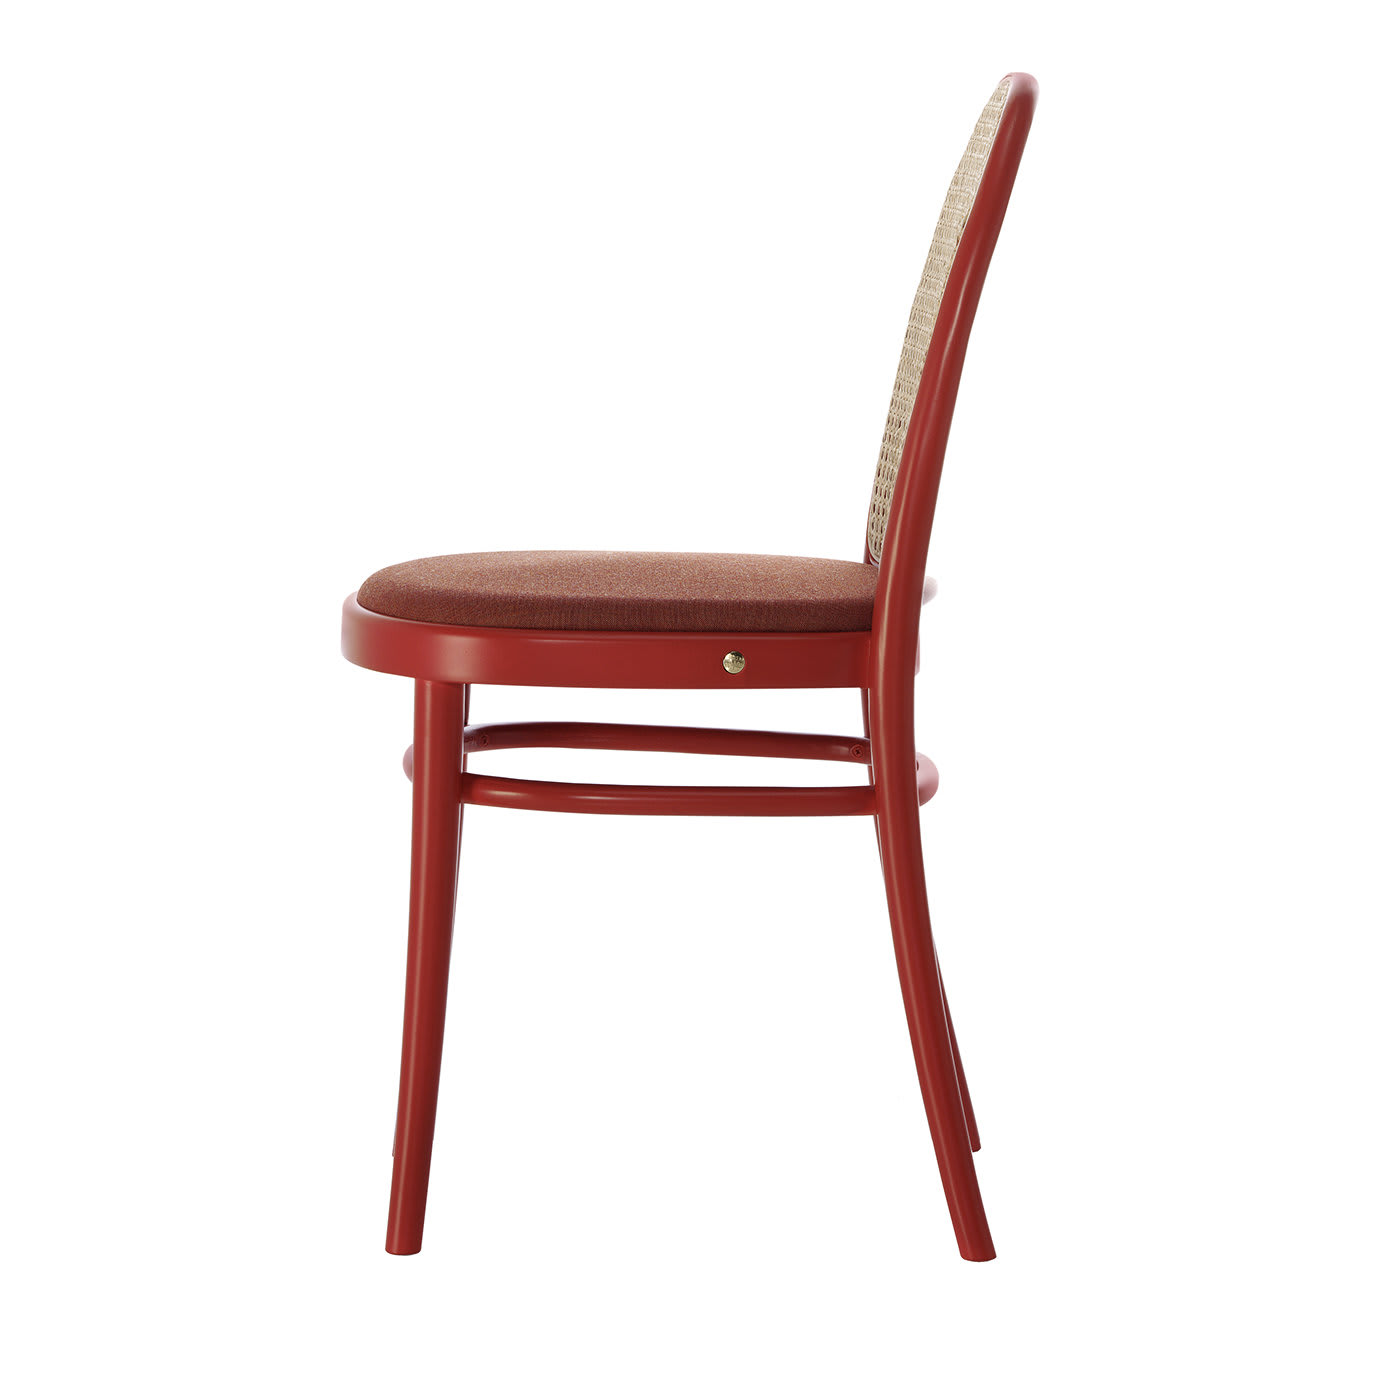 Morris Red Low Chair by GamFratesi - Gebrüder Thonet Vienna GmbH (GTV) – Wiener GTV Design